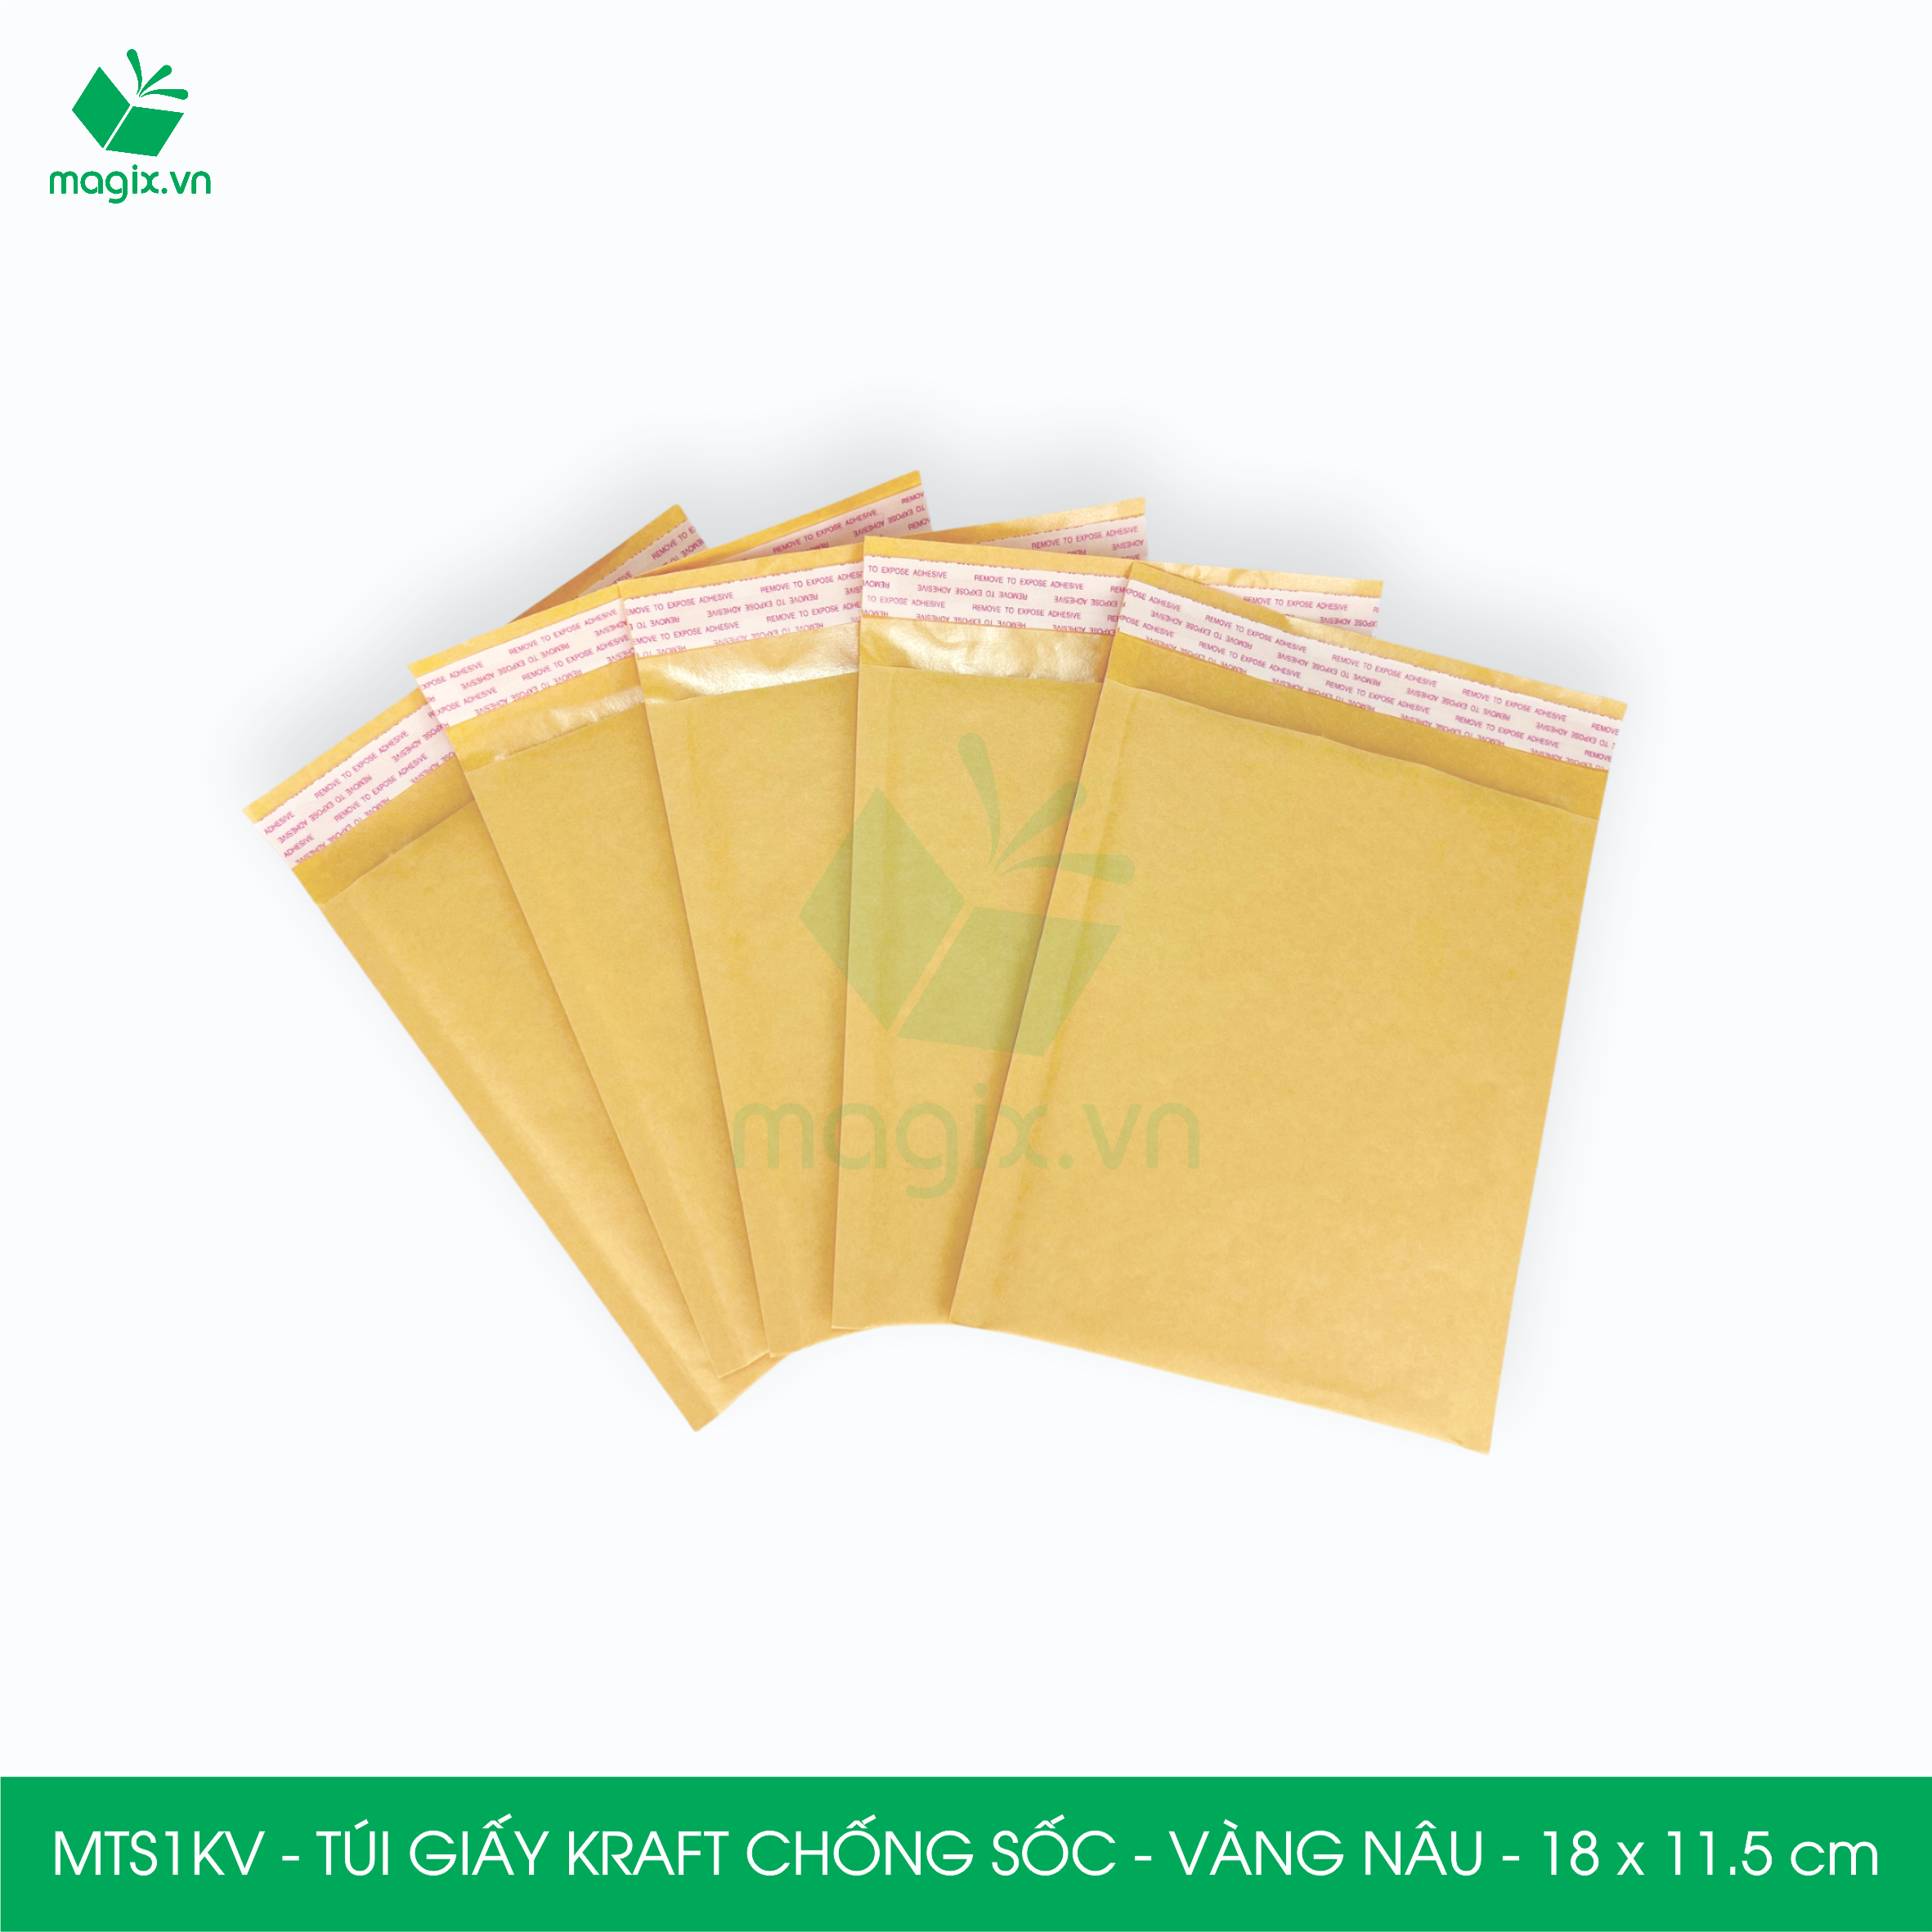 MTS1KV - 18x11.5 cm - 25 túi giấy Kraft bọc bóng khí gói hàng chống sốc màu vàng nâu